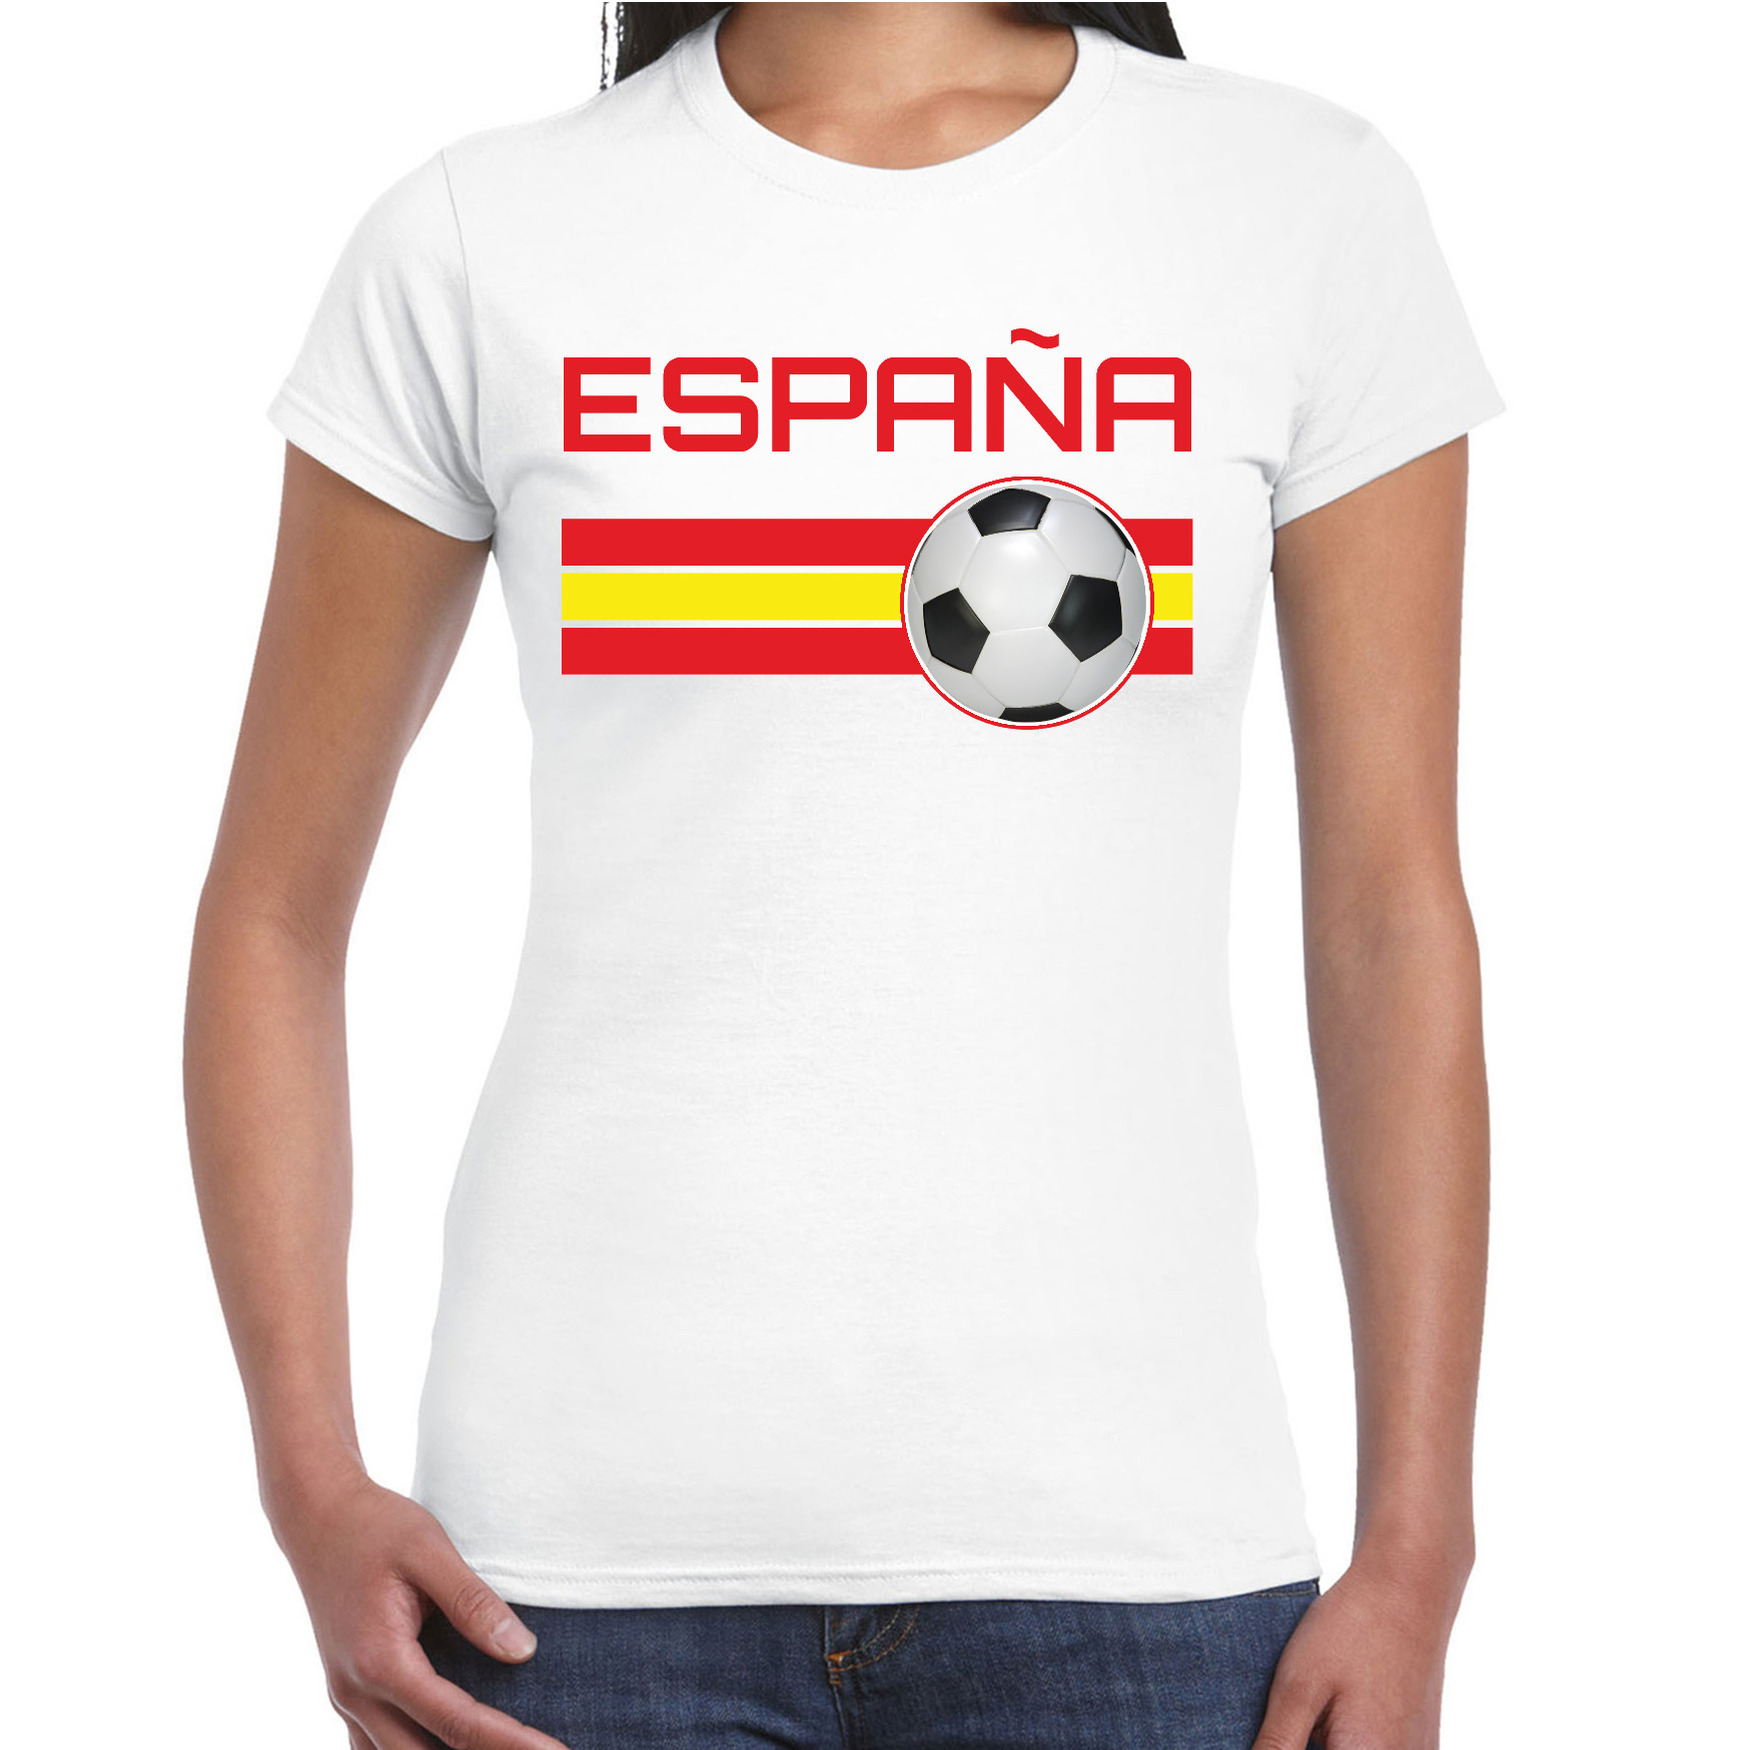 Espana-Spanje voetbal-landen shirt met voetbal en Spaanse vlag wit voor dames